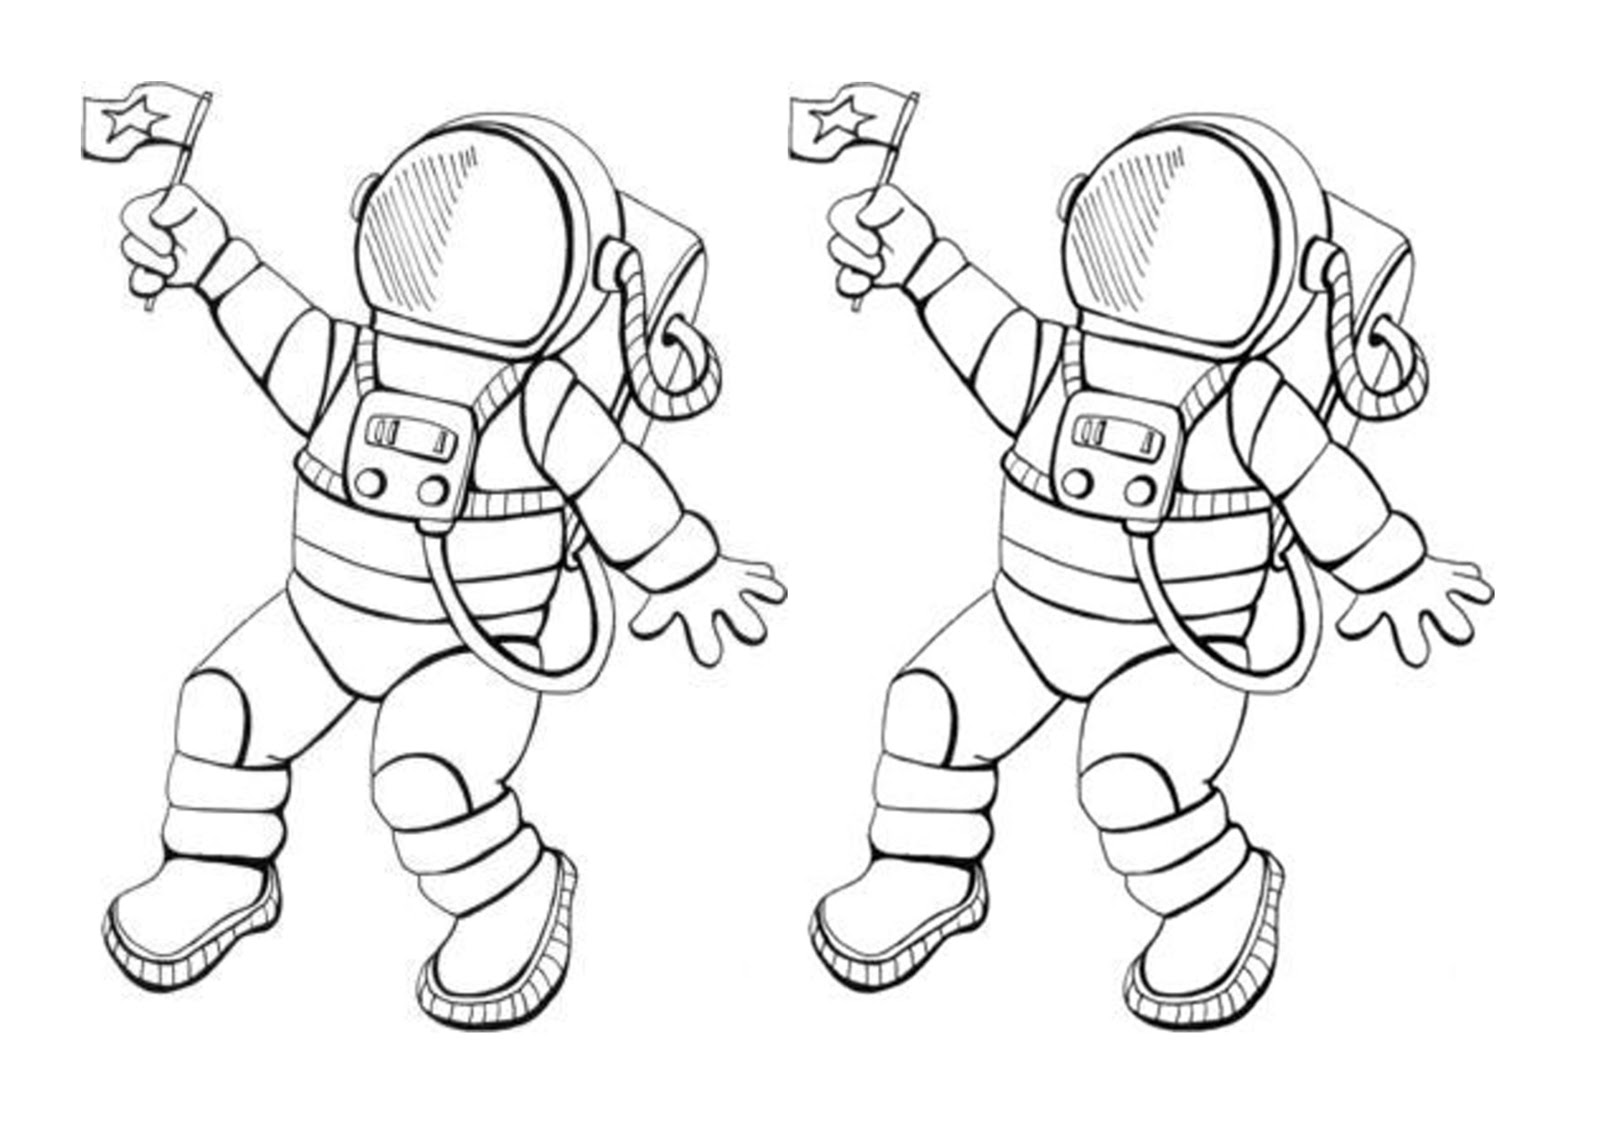 Как разукрасить космонавта. Космонавт раскраска для детей. Космонавт картинка для детей раскраска. Космонавт раскраска для малышей. Раскраска Космонавта в скафандре для детей.